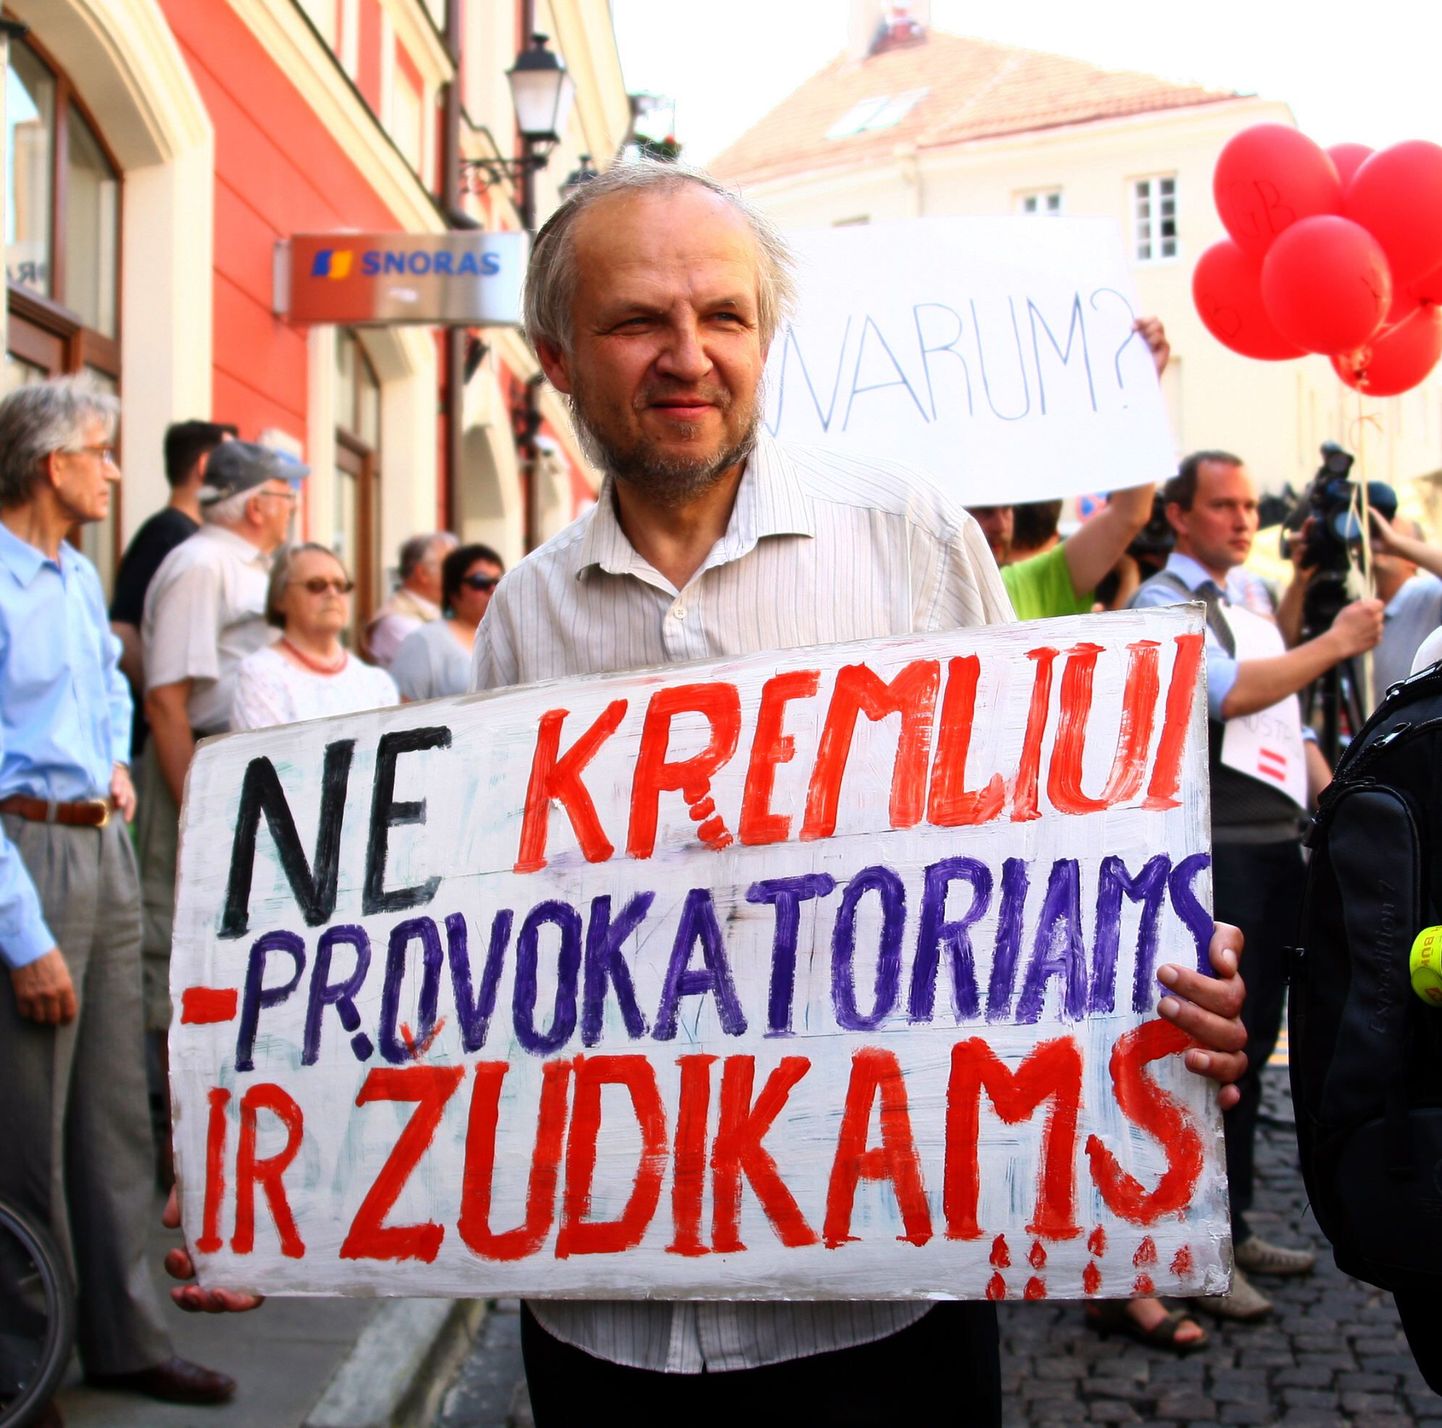 «Ei Kremli provokaatoritele ja palgamõrtsukatele,» teatab see loosung üleeile Vilniuse Austria saatkonna ees meelt avaldanud mehe käes.